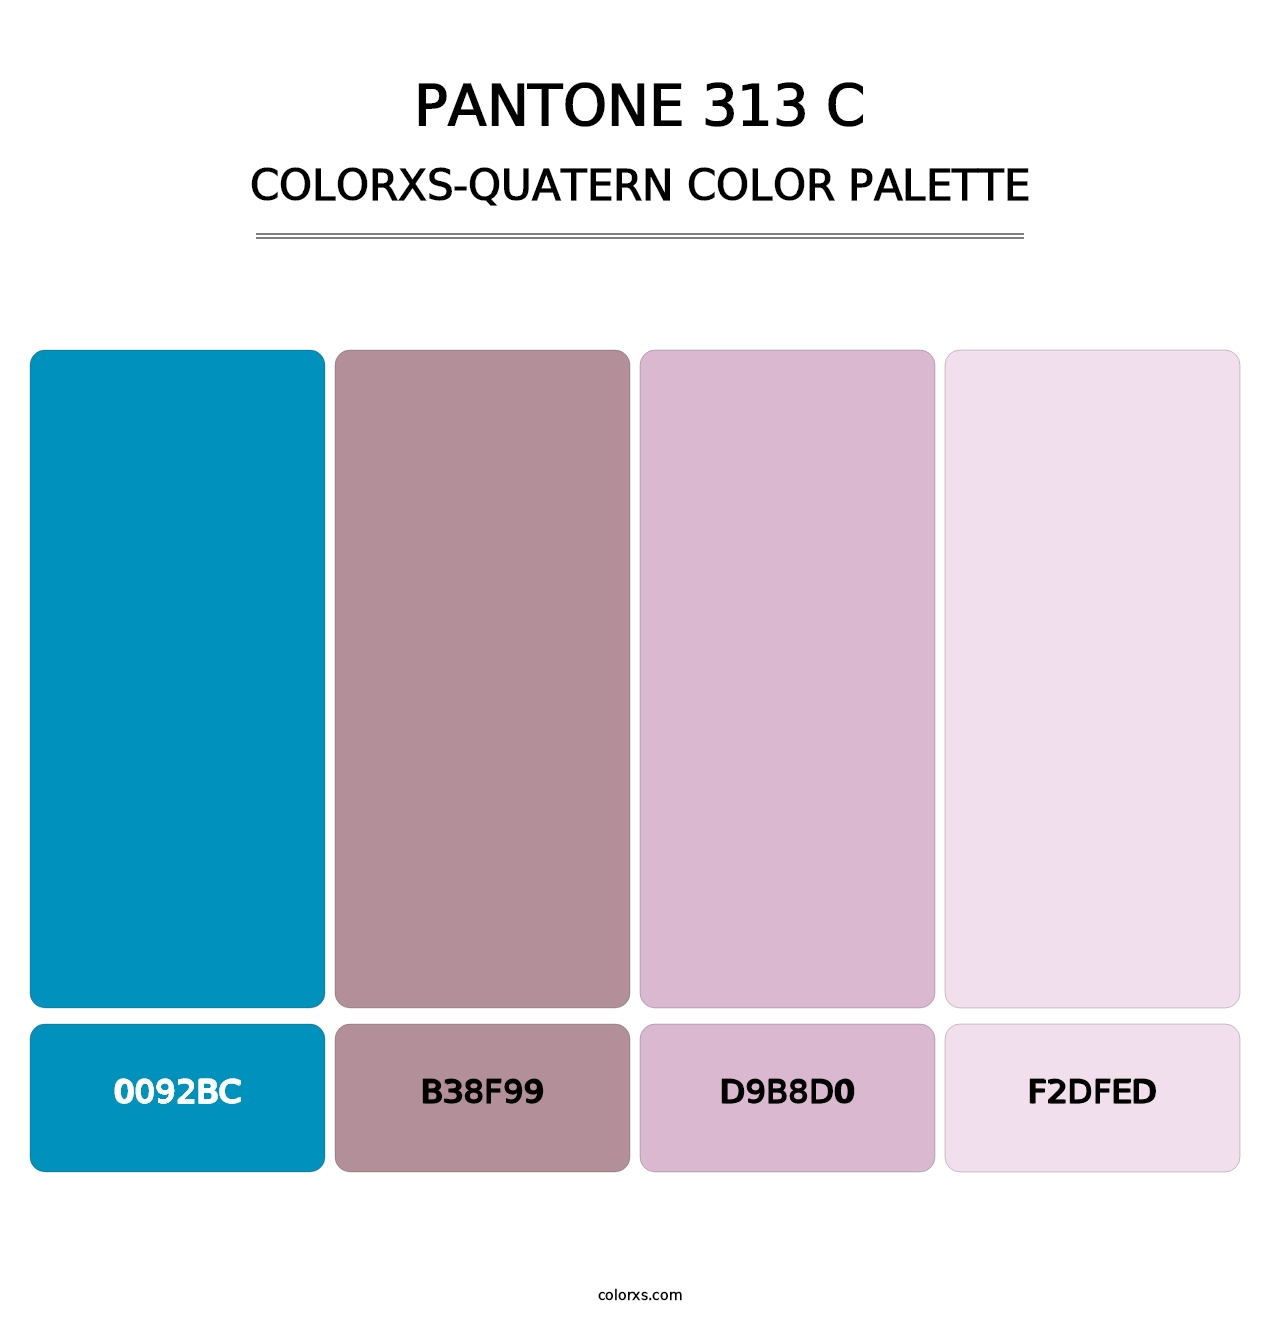 PANTONE 313 C - Colorxs Quatern Palette